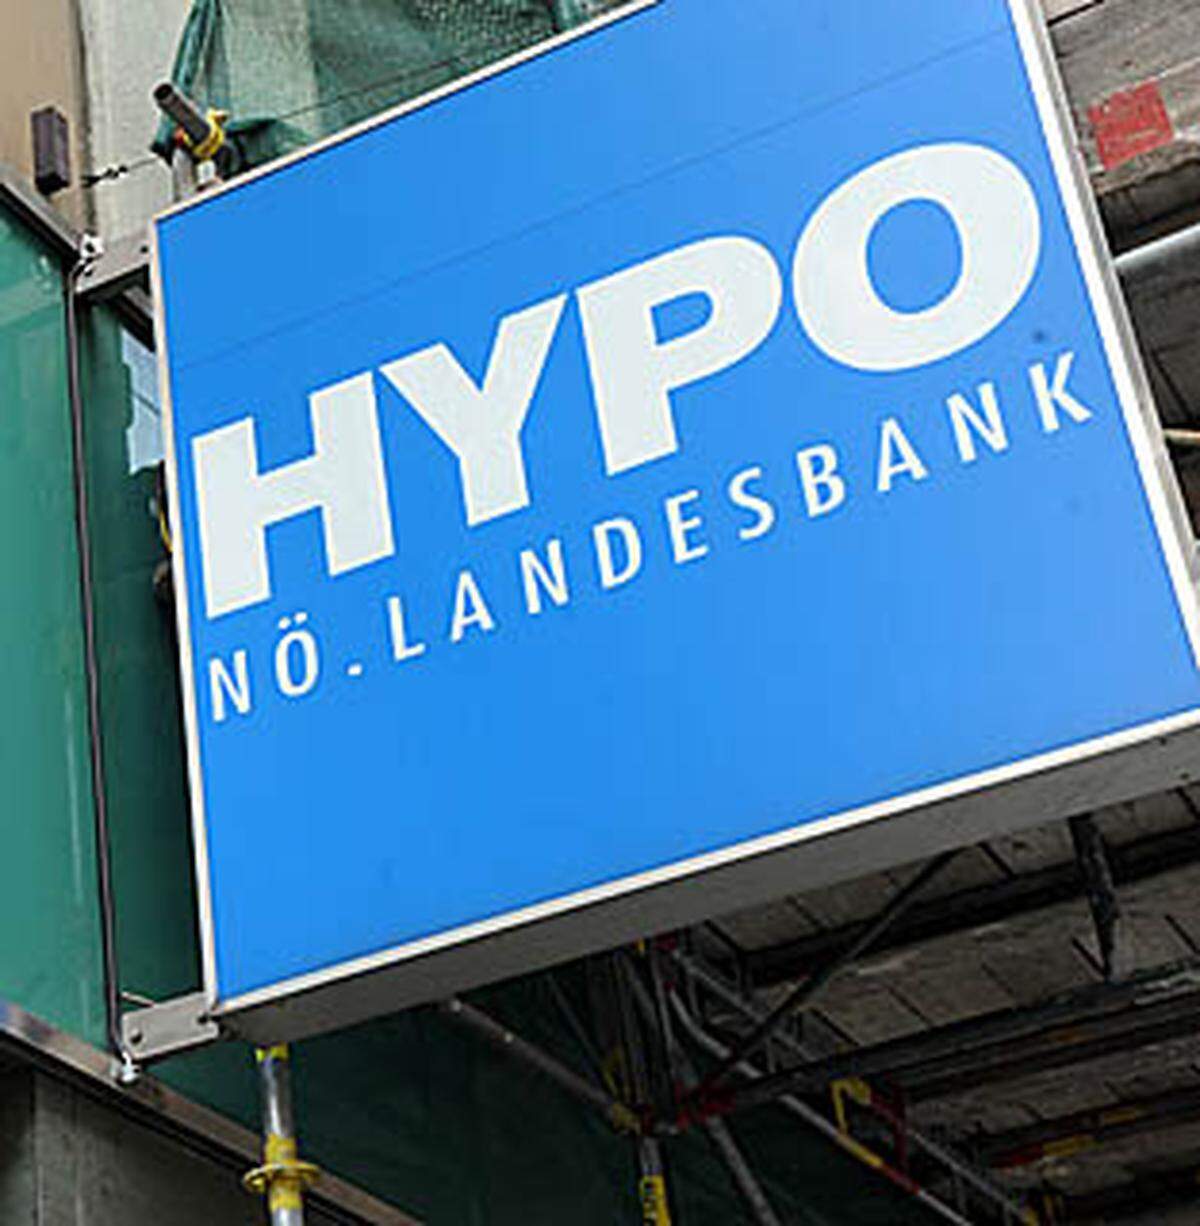 Der Verdacht der Untreue und der Bilanzfälschung richtet sich gegen Hypo-Chef Peter Harold und seinen Ex-Kollegen Richard Juill. Unter anderem geht es um riskante Geschäfte in Irland und die Bilanzdarstellung.